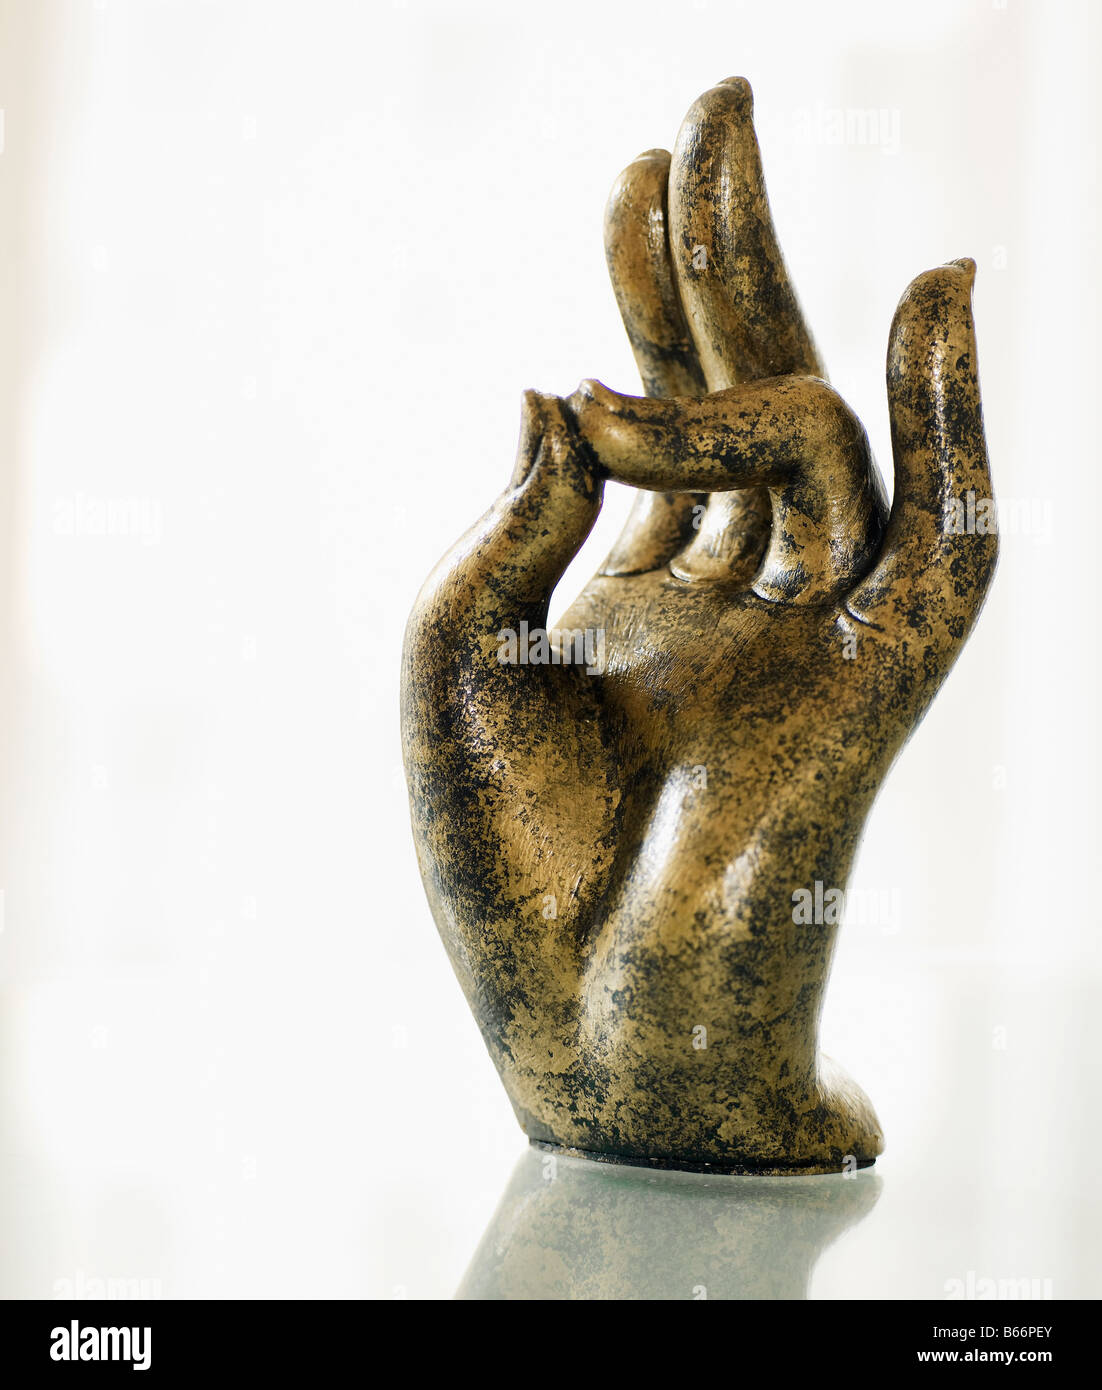 La scultura in bronzo di mano Foto Stock